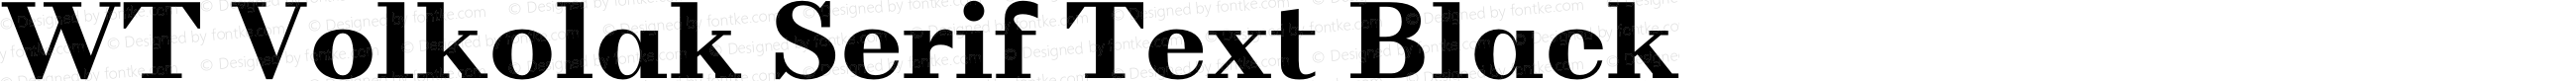 WT Volkolak Serif Text Black